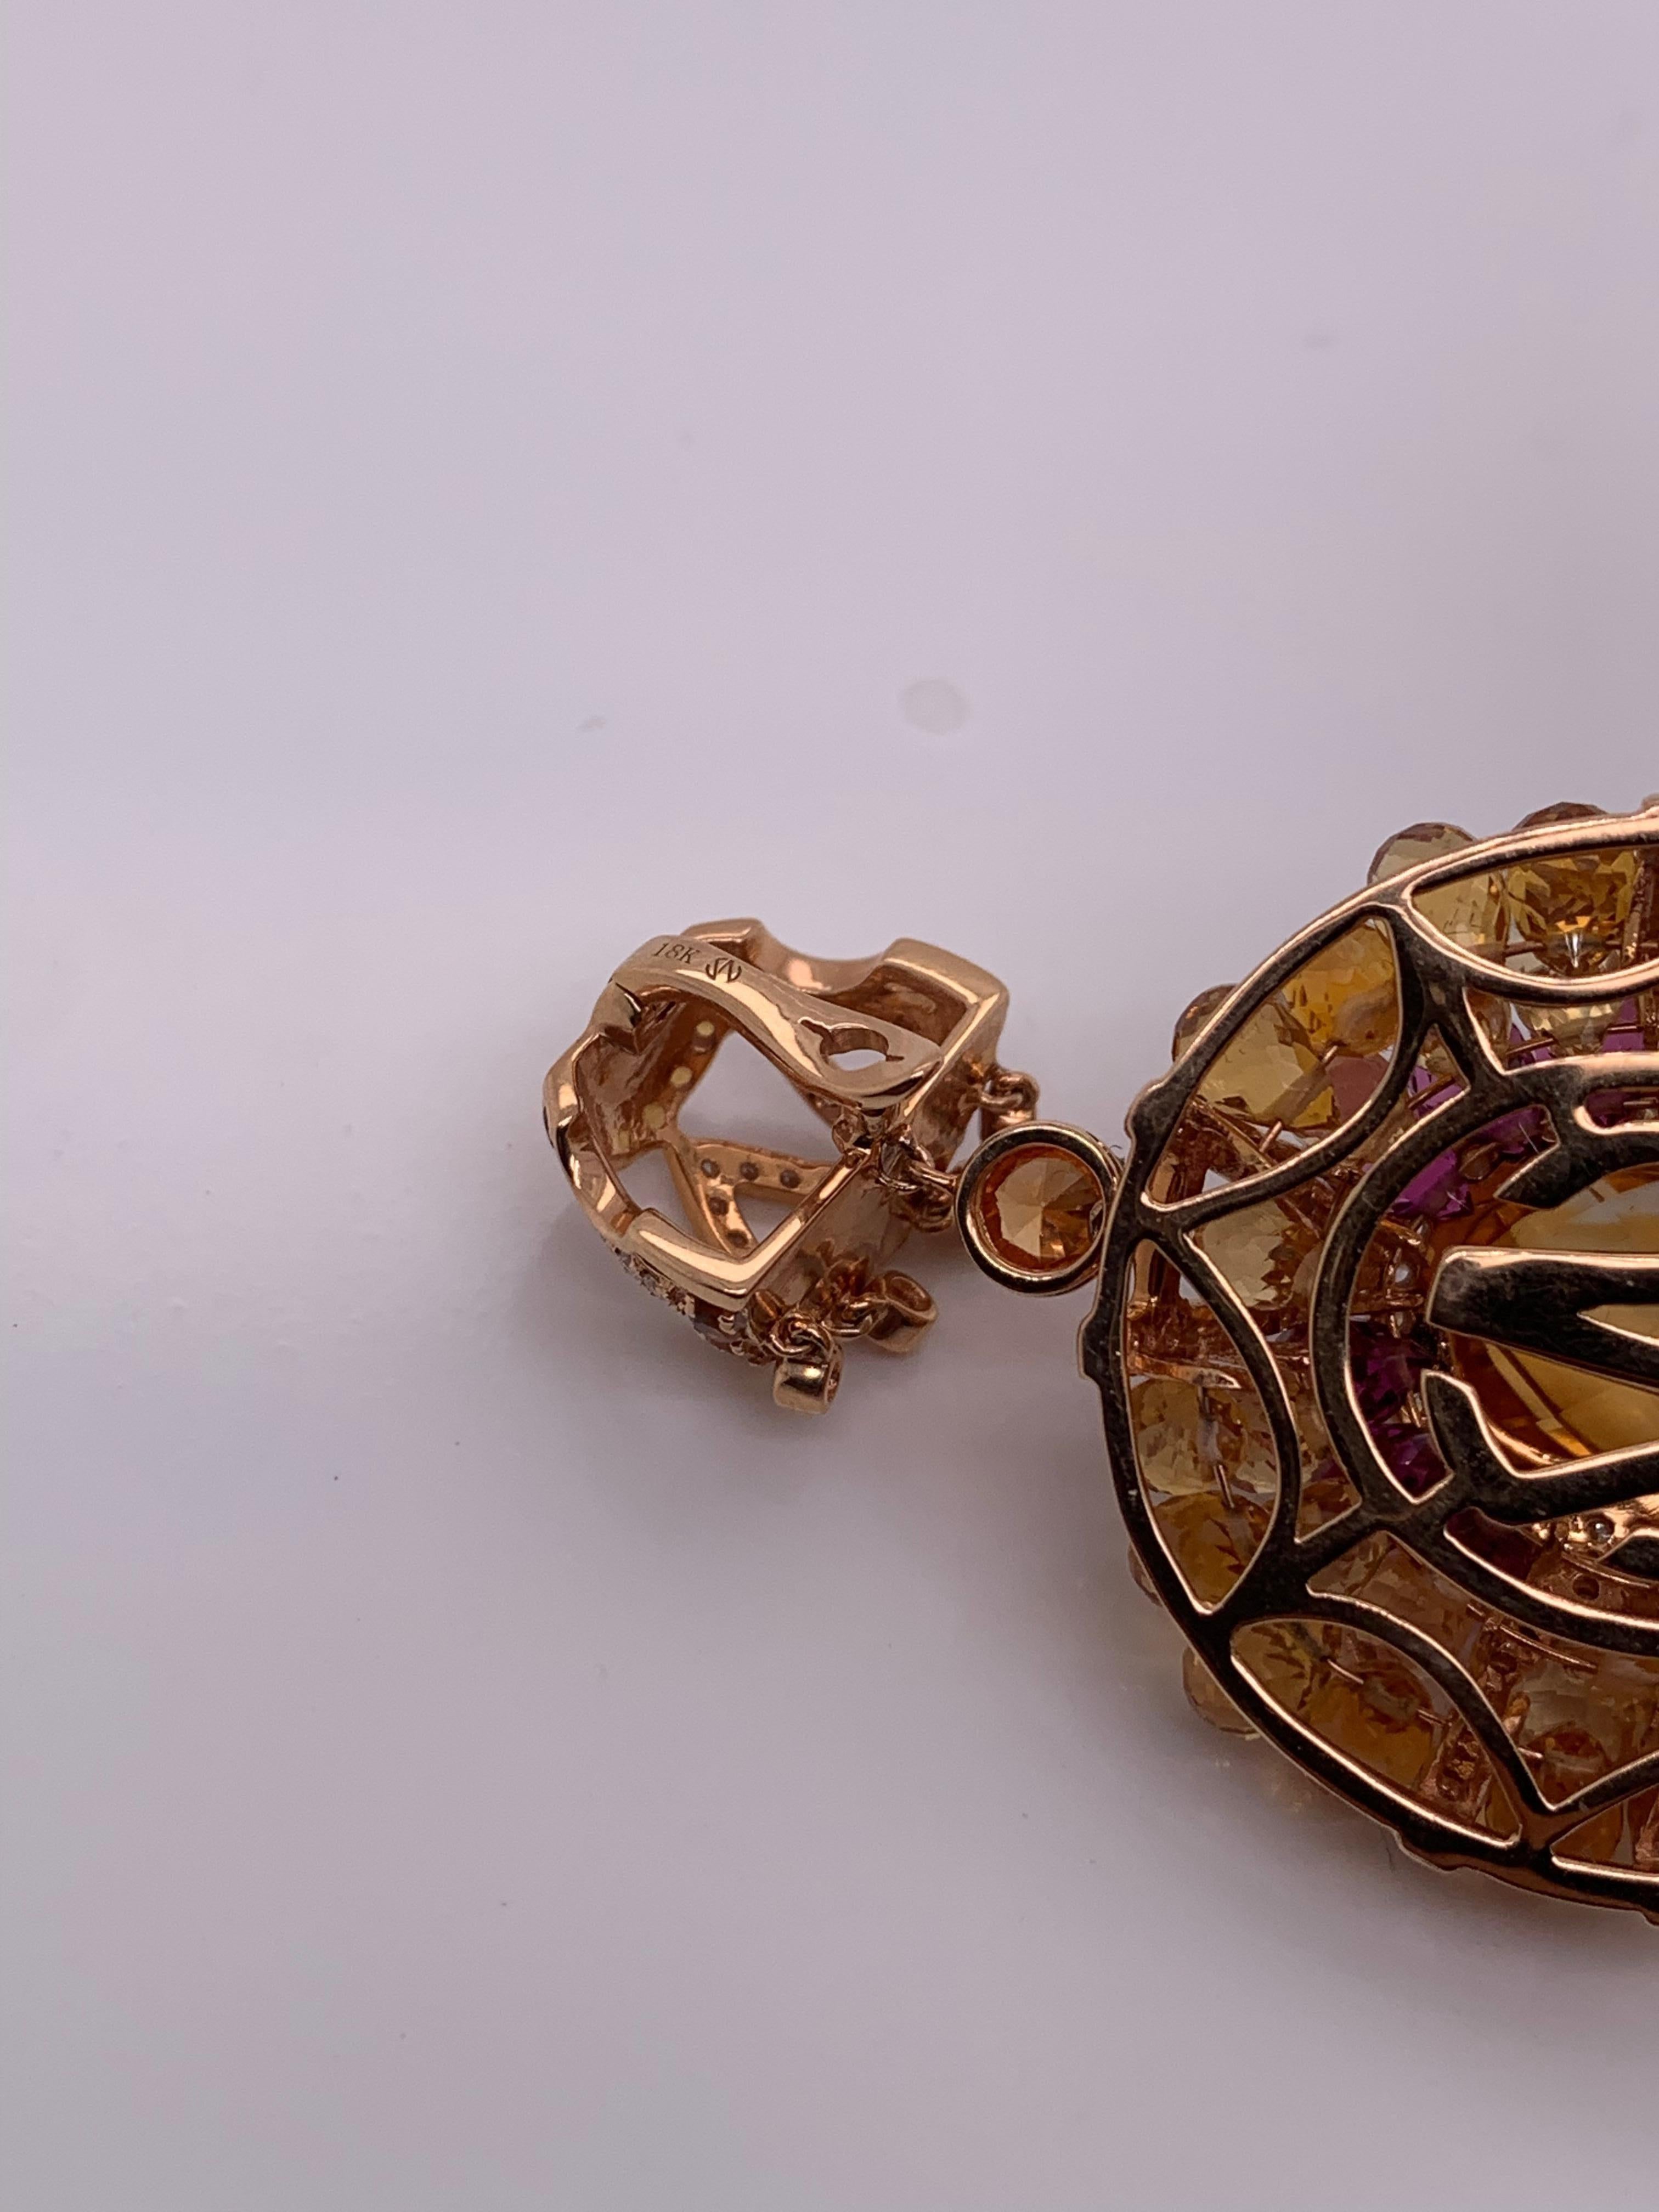 Briolette Cut 2-In-1 Citrine Briolette Pendant Necklace in 18 Karat Rose Gold For Sale